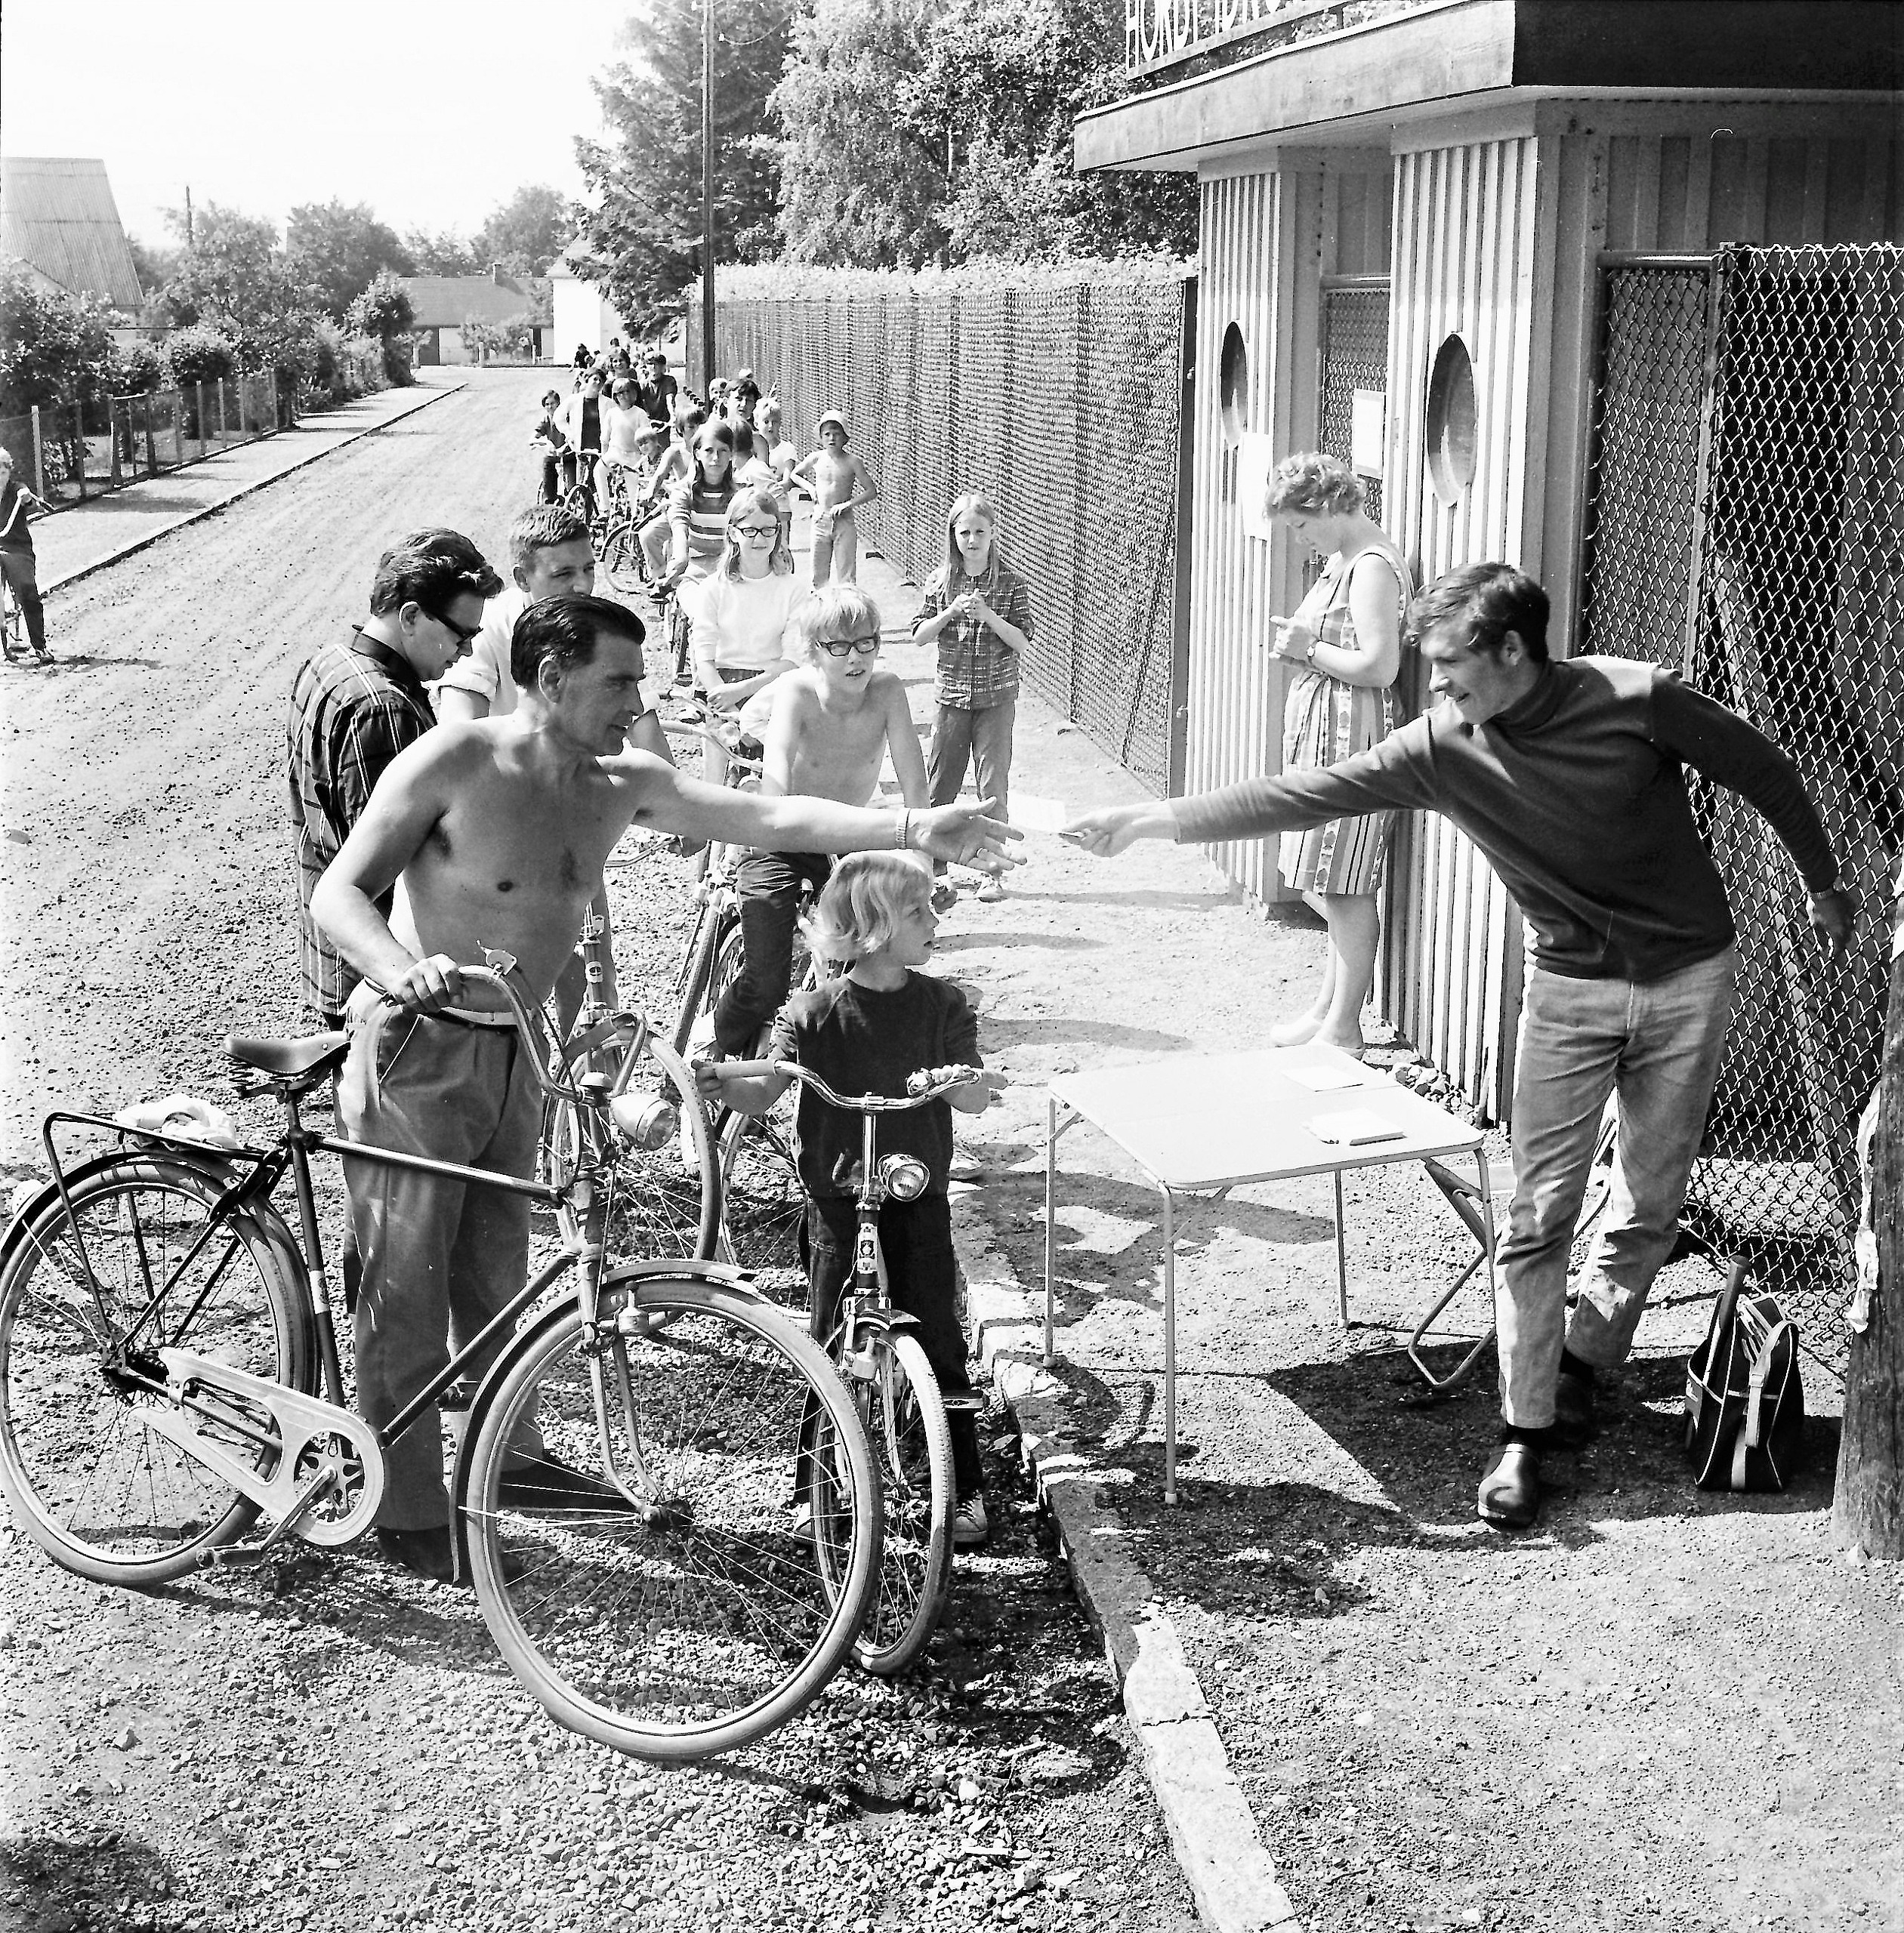 En herre sträcker på sig och delar ut något i handen till ungdomar på cykel. Utomhus, svartvit bild.